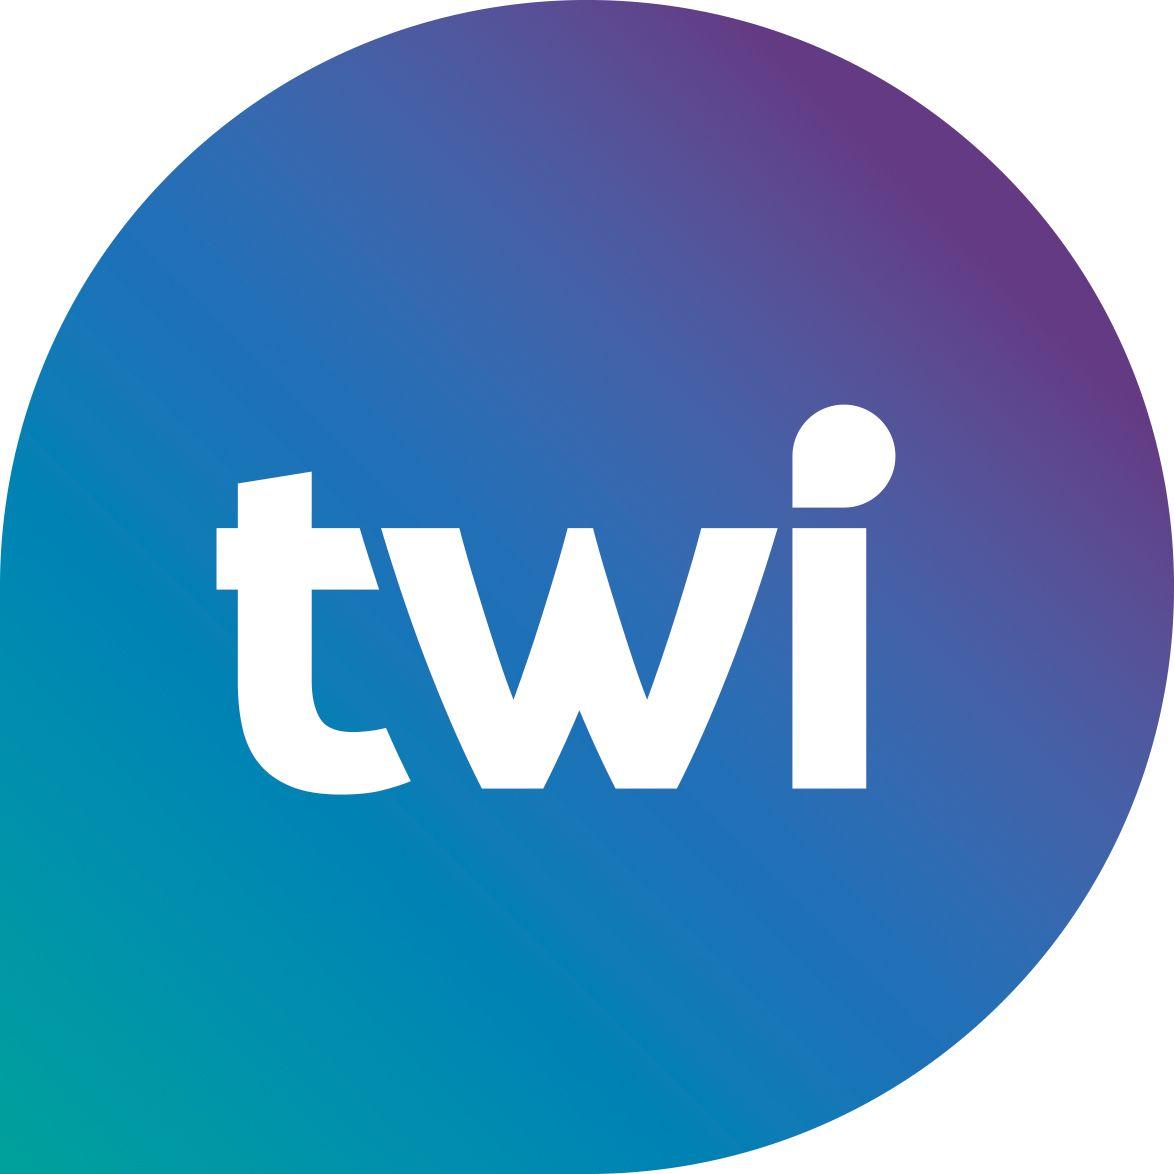 Twi Logo - TWI. PR, Copywriting, Marketing, Digital Essex, Suffolk, London